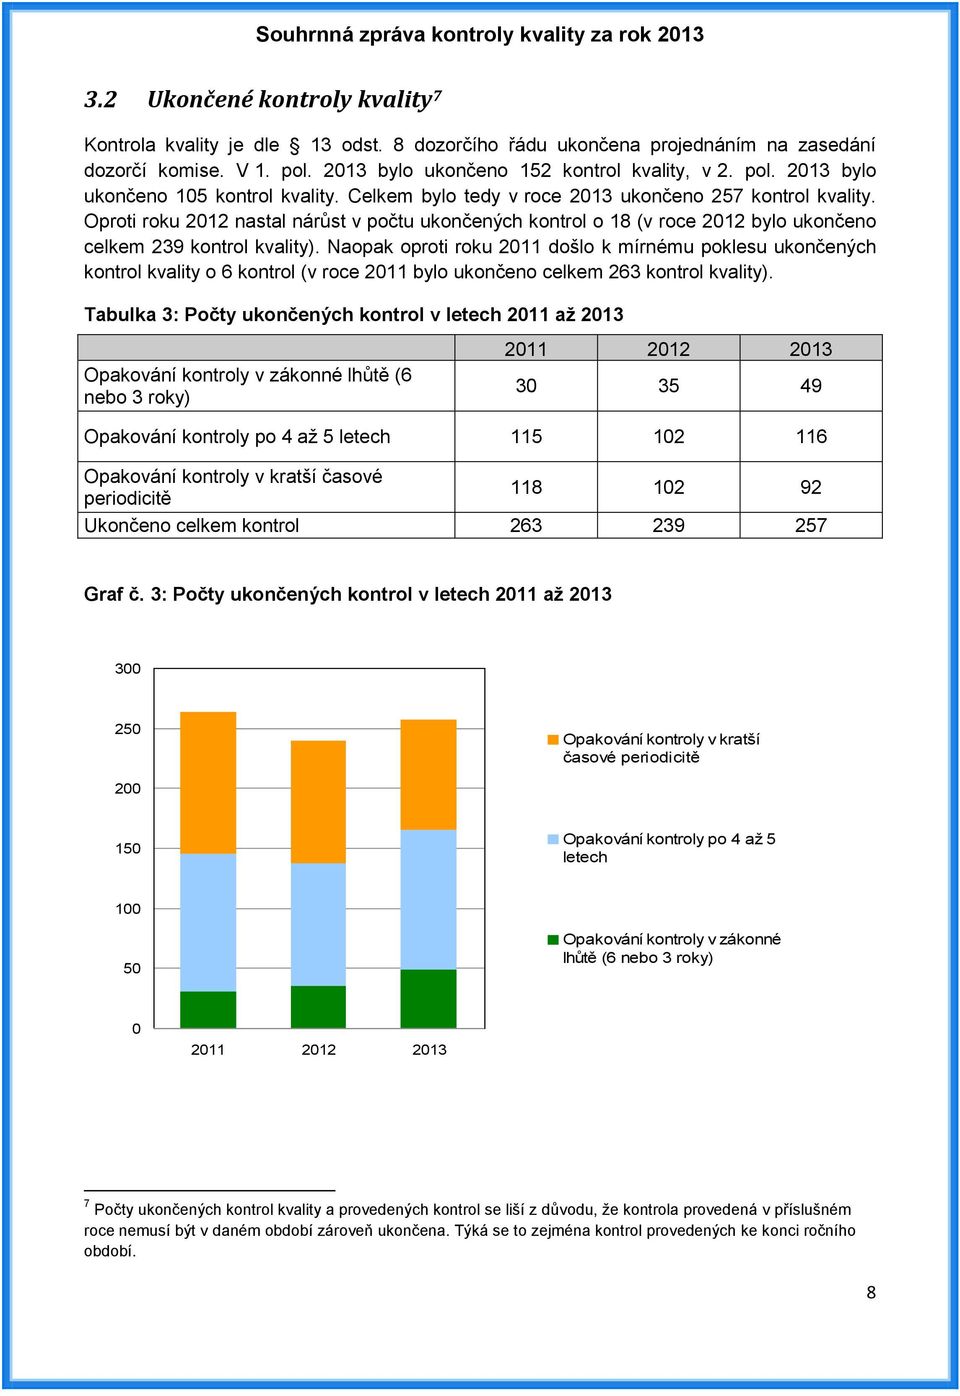 Naopak oproti roku 2011 došlo k mírnému poklesu ukončených kontrol kvality o 6 kontrol (v roce 2011 bylo ukončeno celkem 263 kontrol kvality).